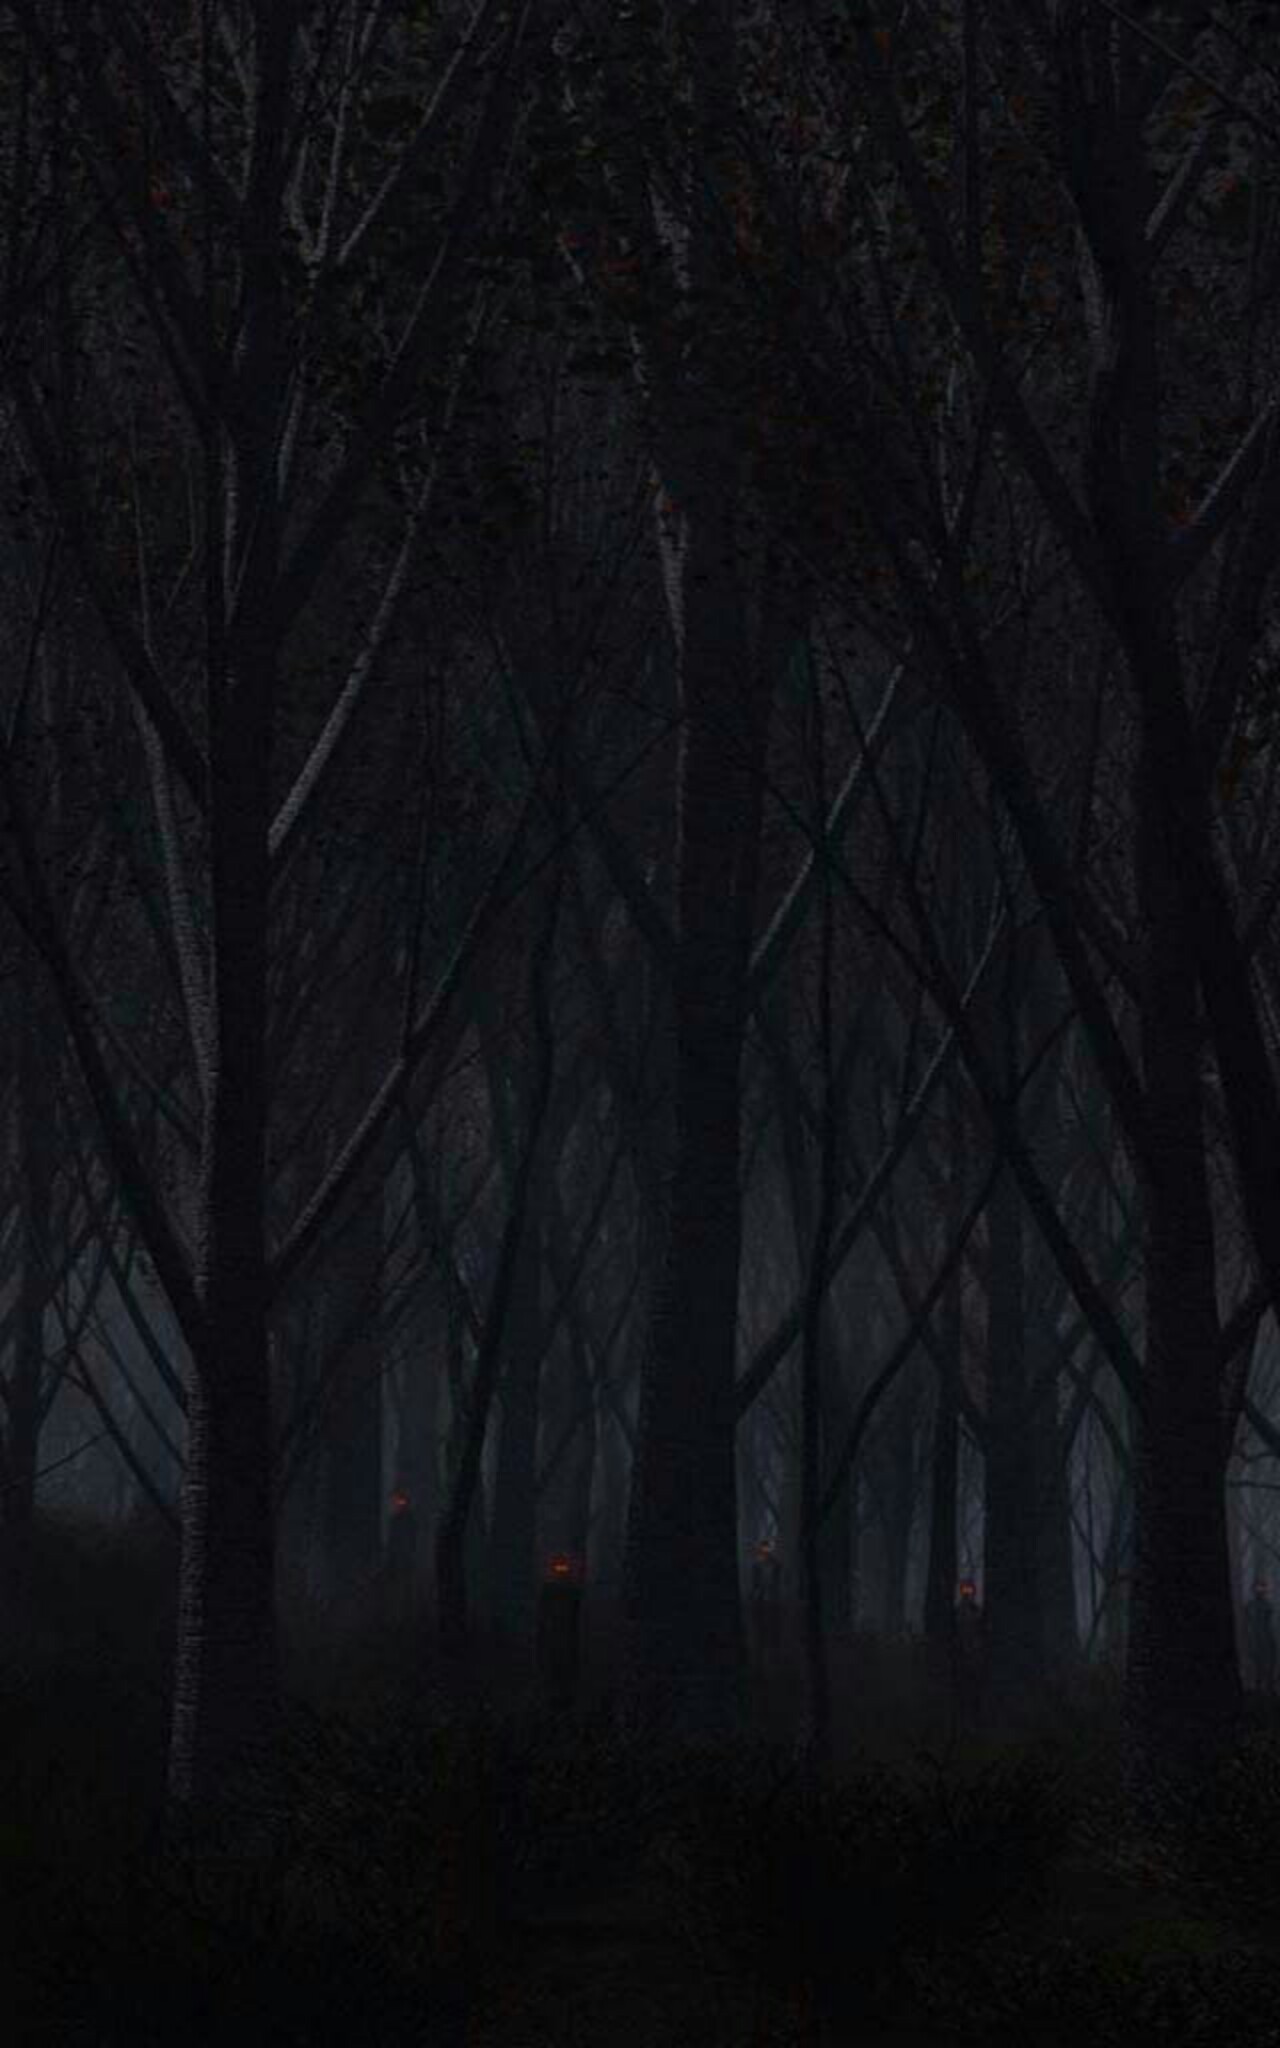 Картинка на телефон вертикальная темная. Ночной лес. Мрачный лес. Мрачные обои. Мрачный фон.